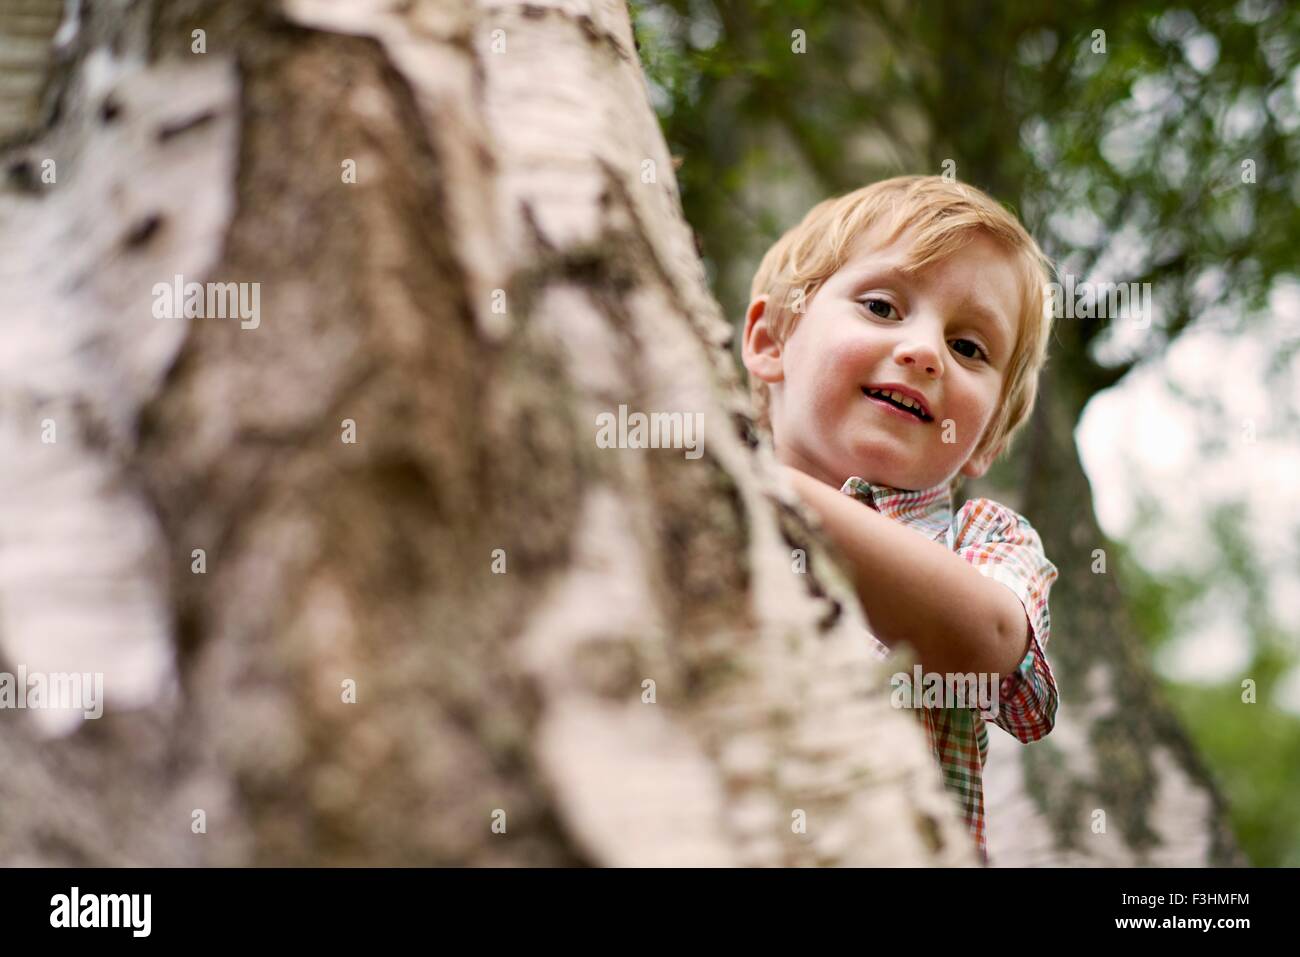 Boy peeking de derrière tree, smiling Banque D'Images